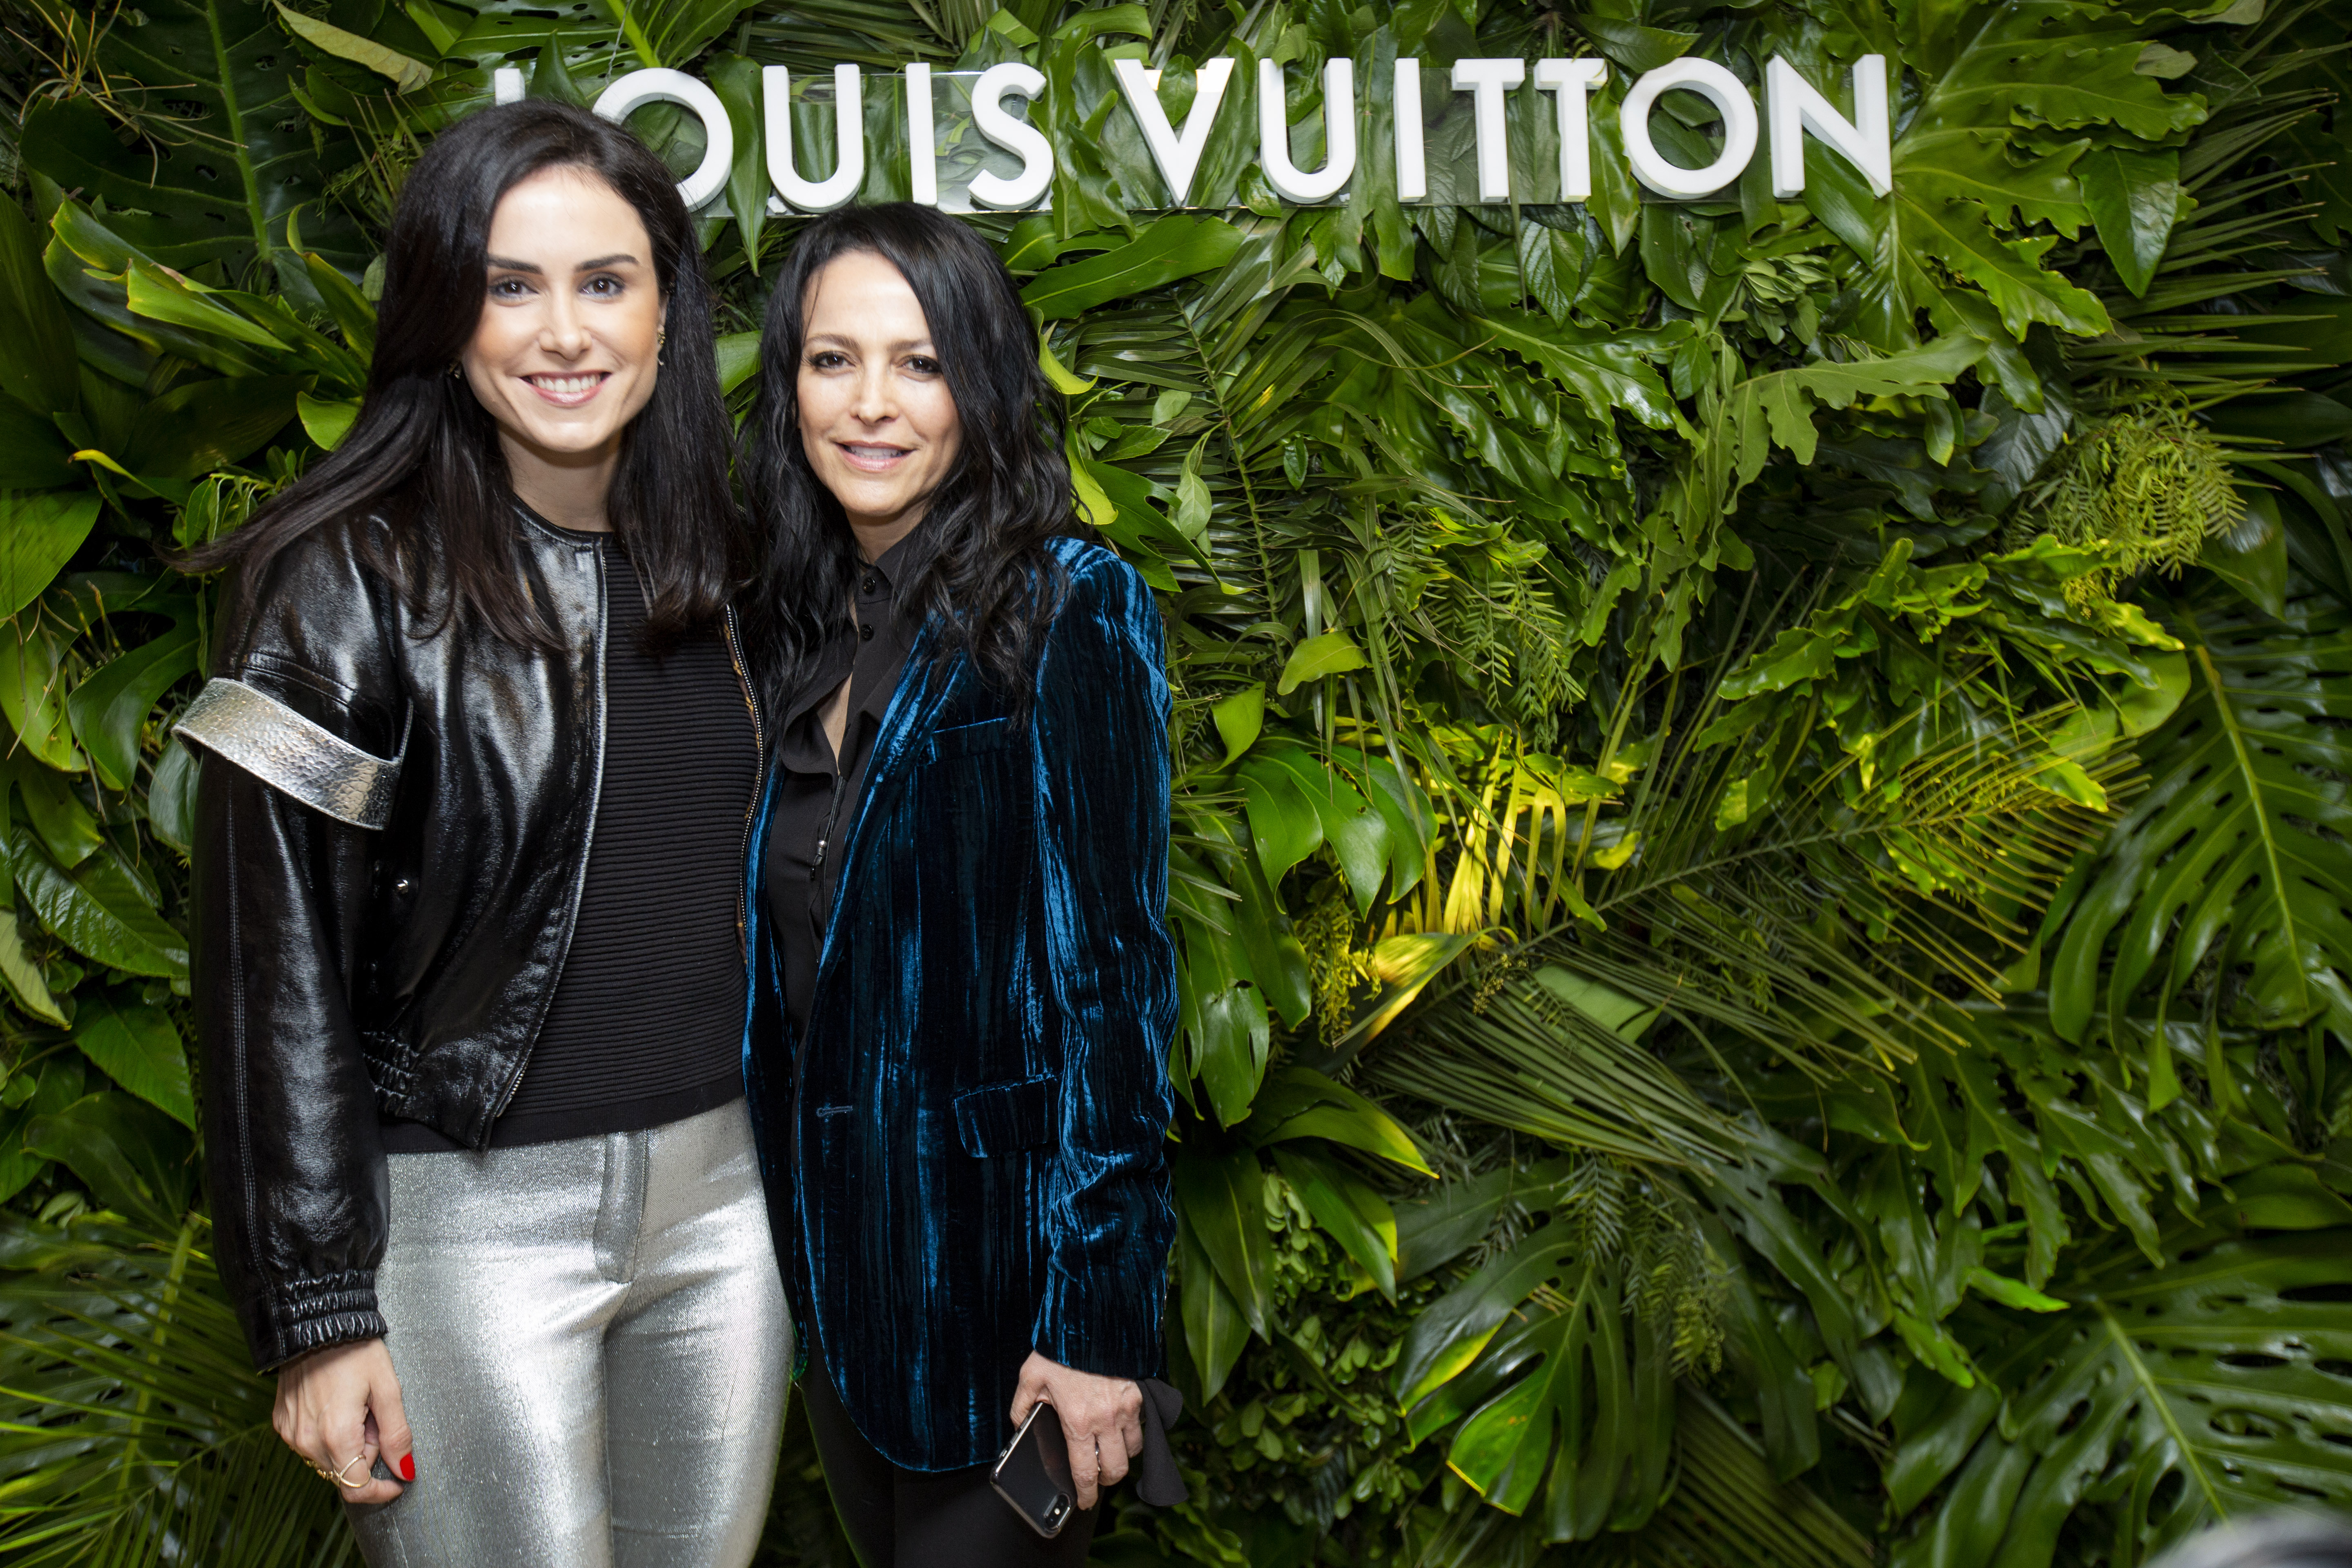 Louis Vuitton celebró su regreso a la Argentina - Marcela